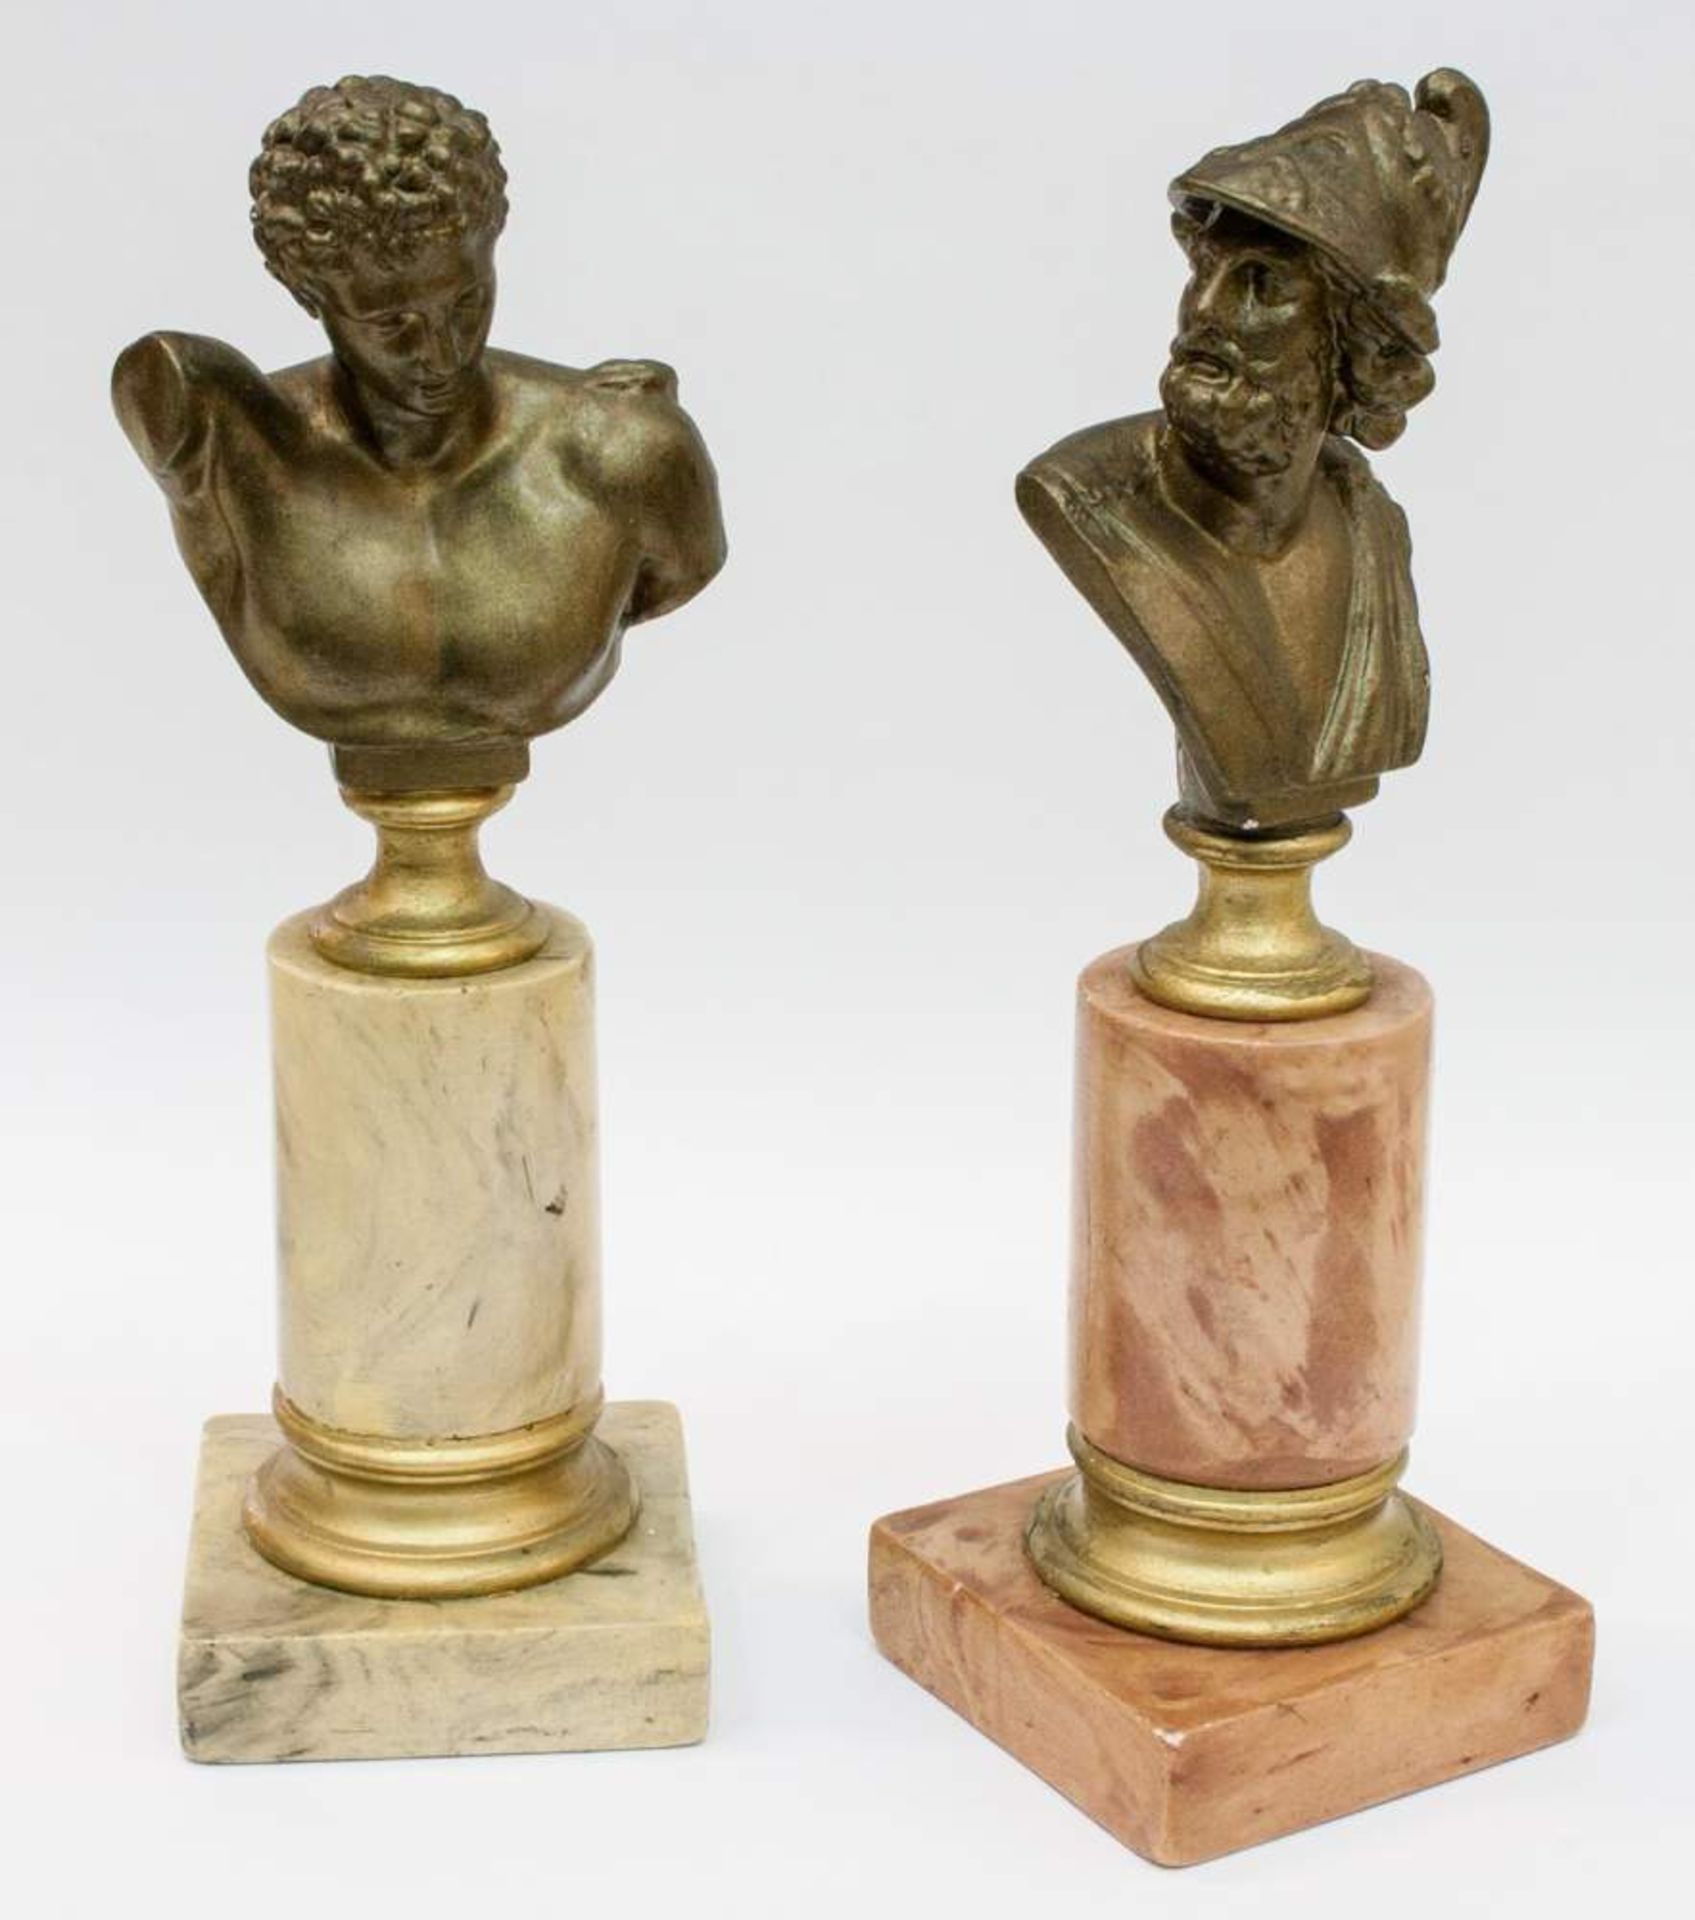 Paar Schreibtischfiguren1 Paar Brustportraits von Alexander dem Großen und einem griechischen Gott